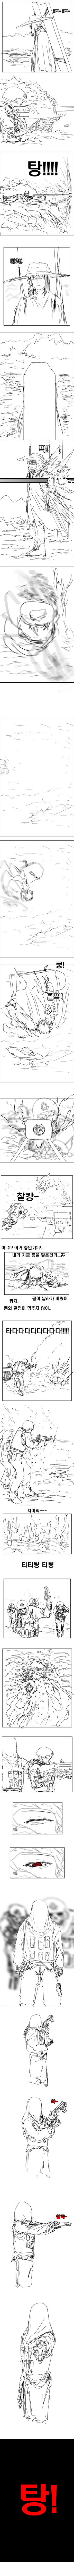 156 관의 소녀의 저주 이야기 4화.png